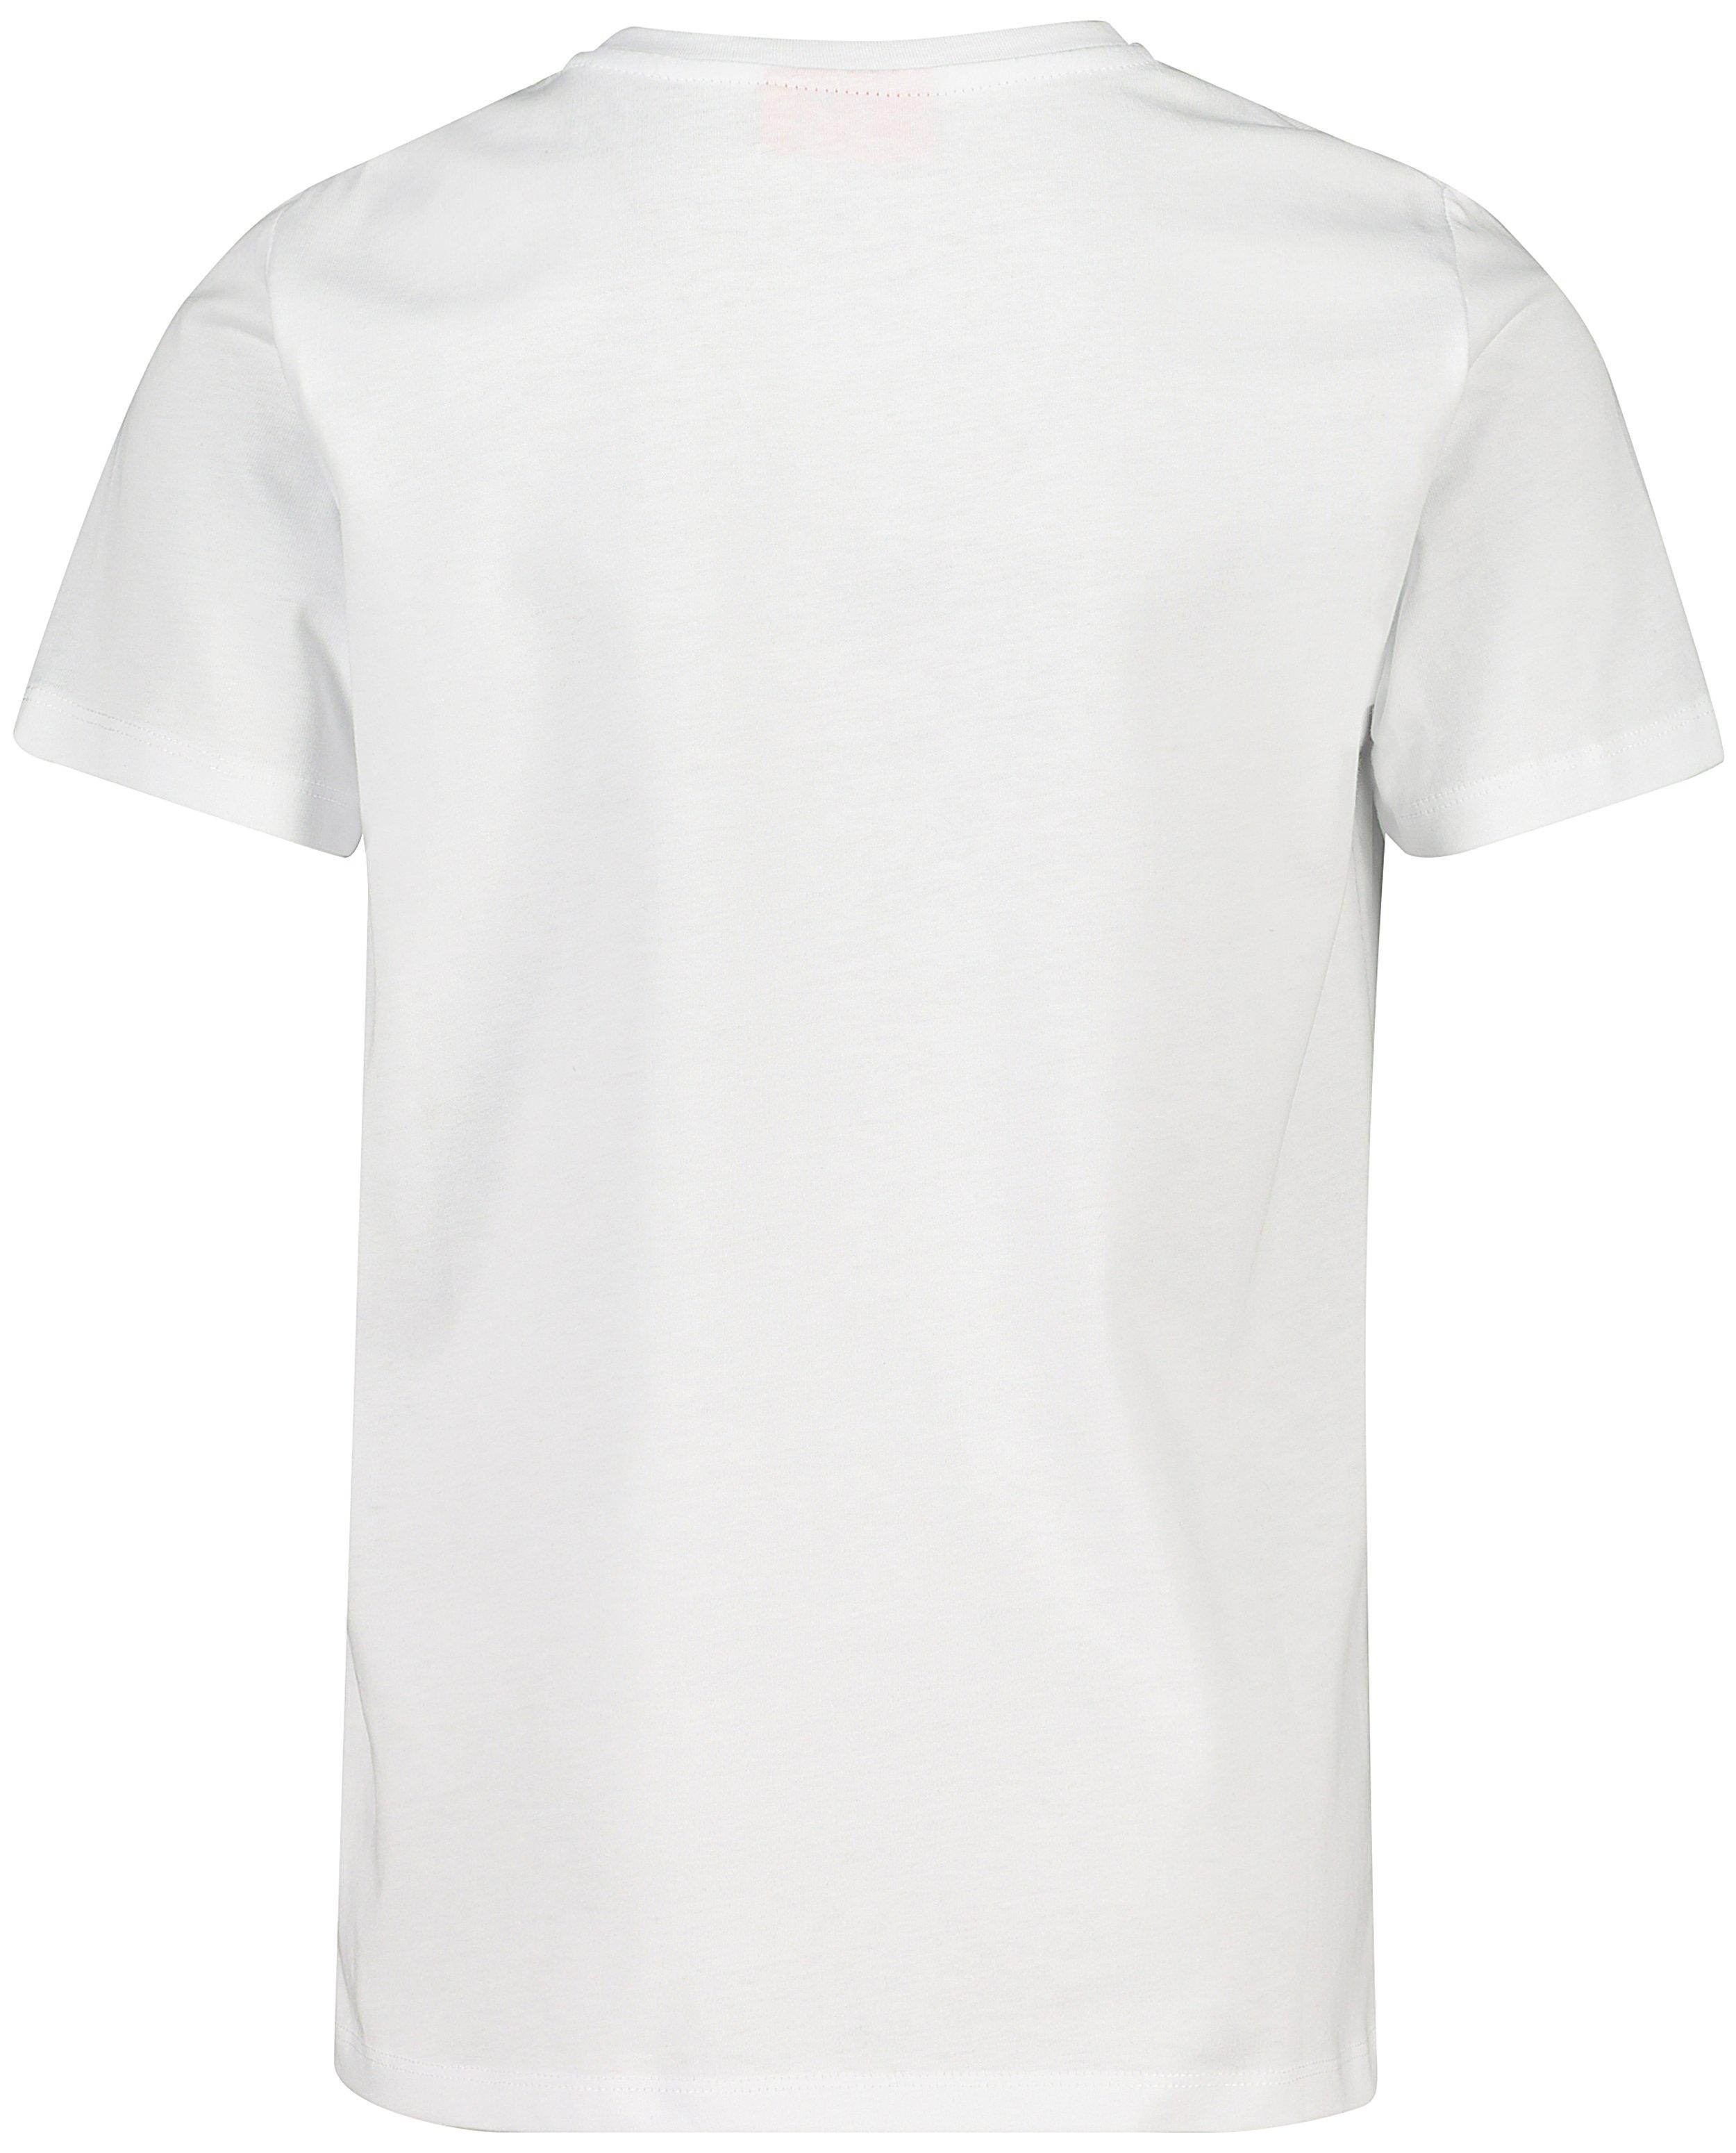 T-shirts - T-shirt blanc #LikeMe